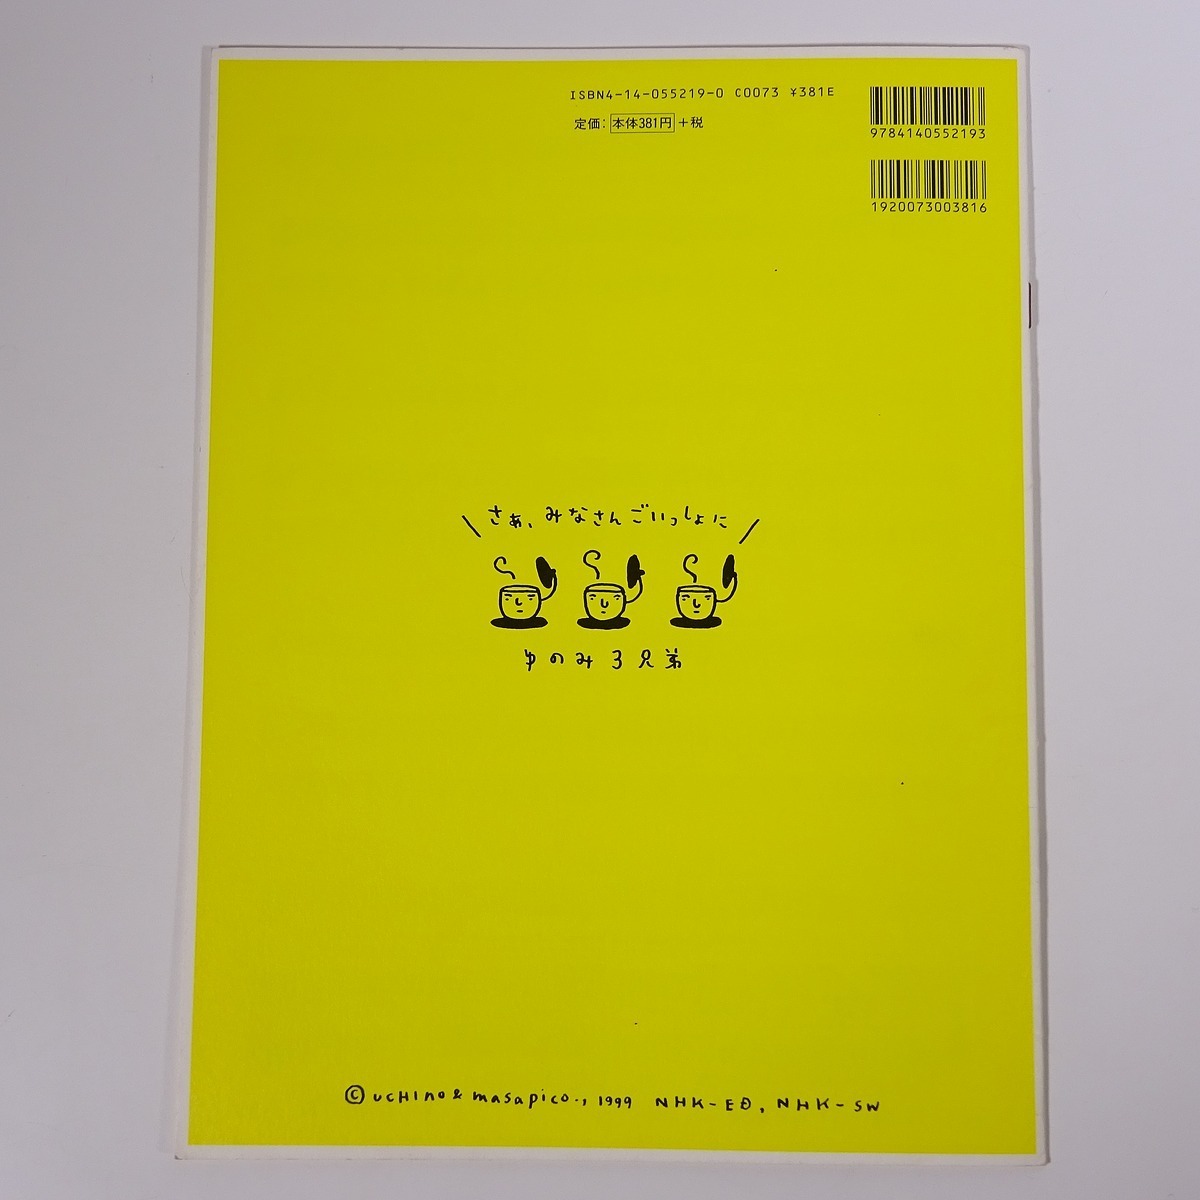 楽譜 だんご3兄弟の楽譜 Nhkおかあさんといっしょ Nhk出版 1999 大型本 音楽 ピアノ 楽譜 売買されたオークション情報 Yahooの商品情報をアーカイブ公開 オークファン Aucfan Com